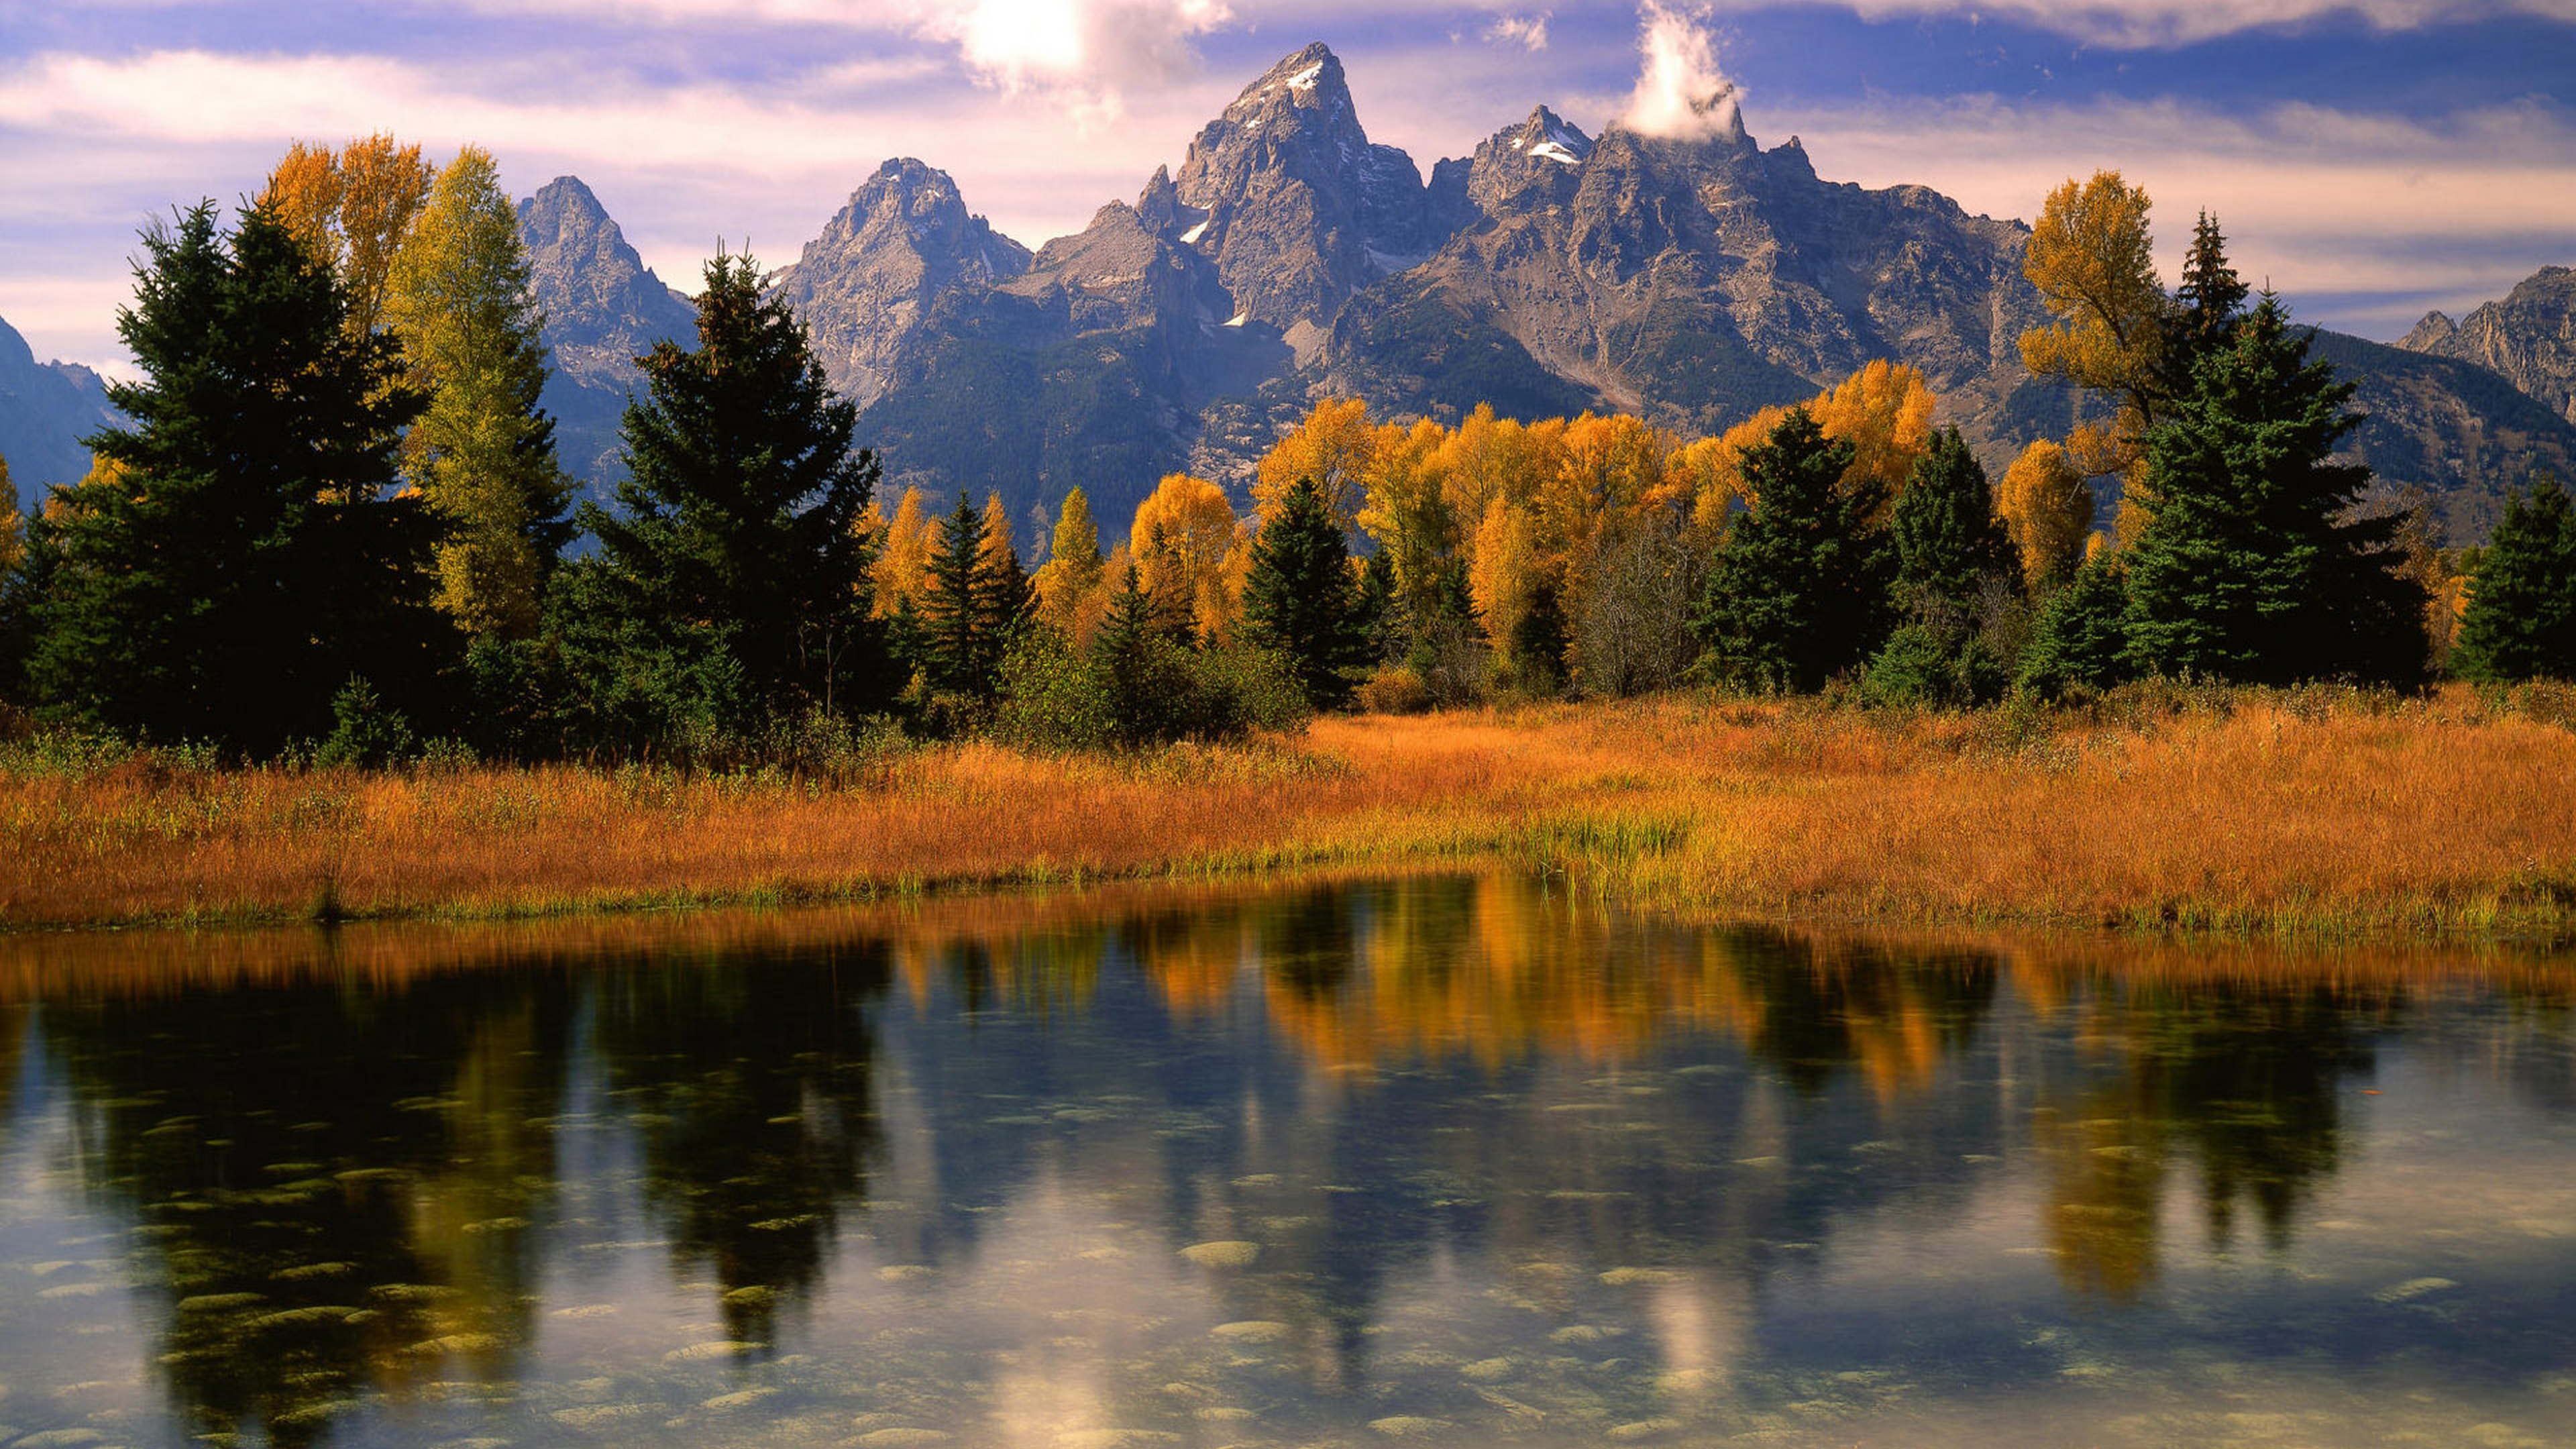 Живая природа 13.3. Национальный парк Гранд Тетон, гора Моран. Природа. Красивый пейзаж. Осень в горах.